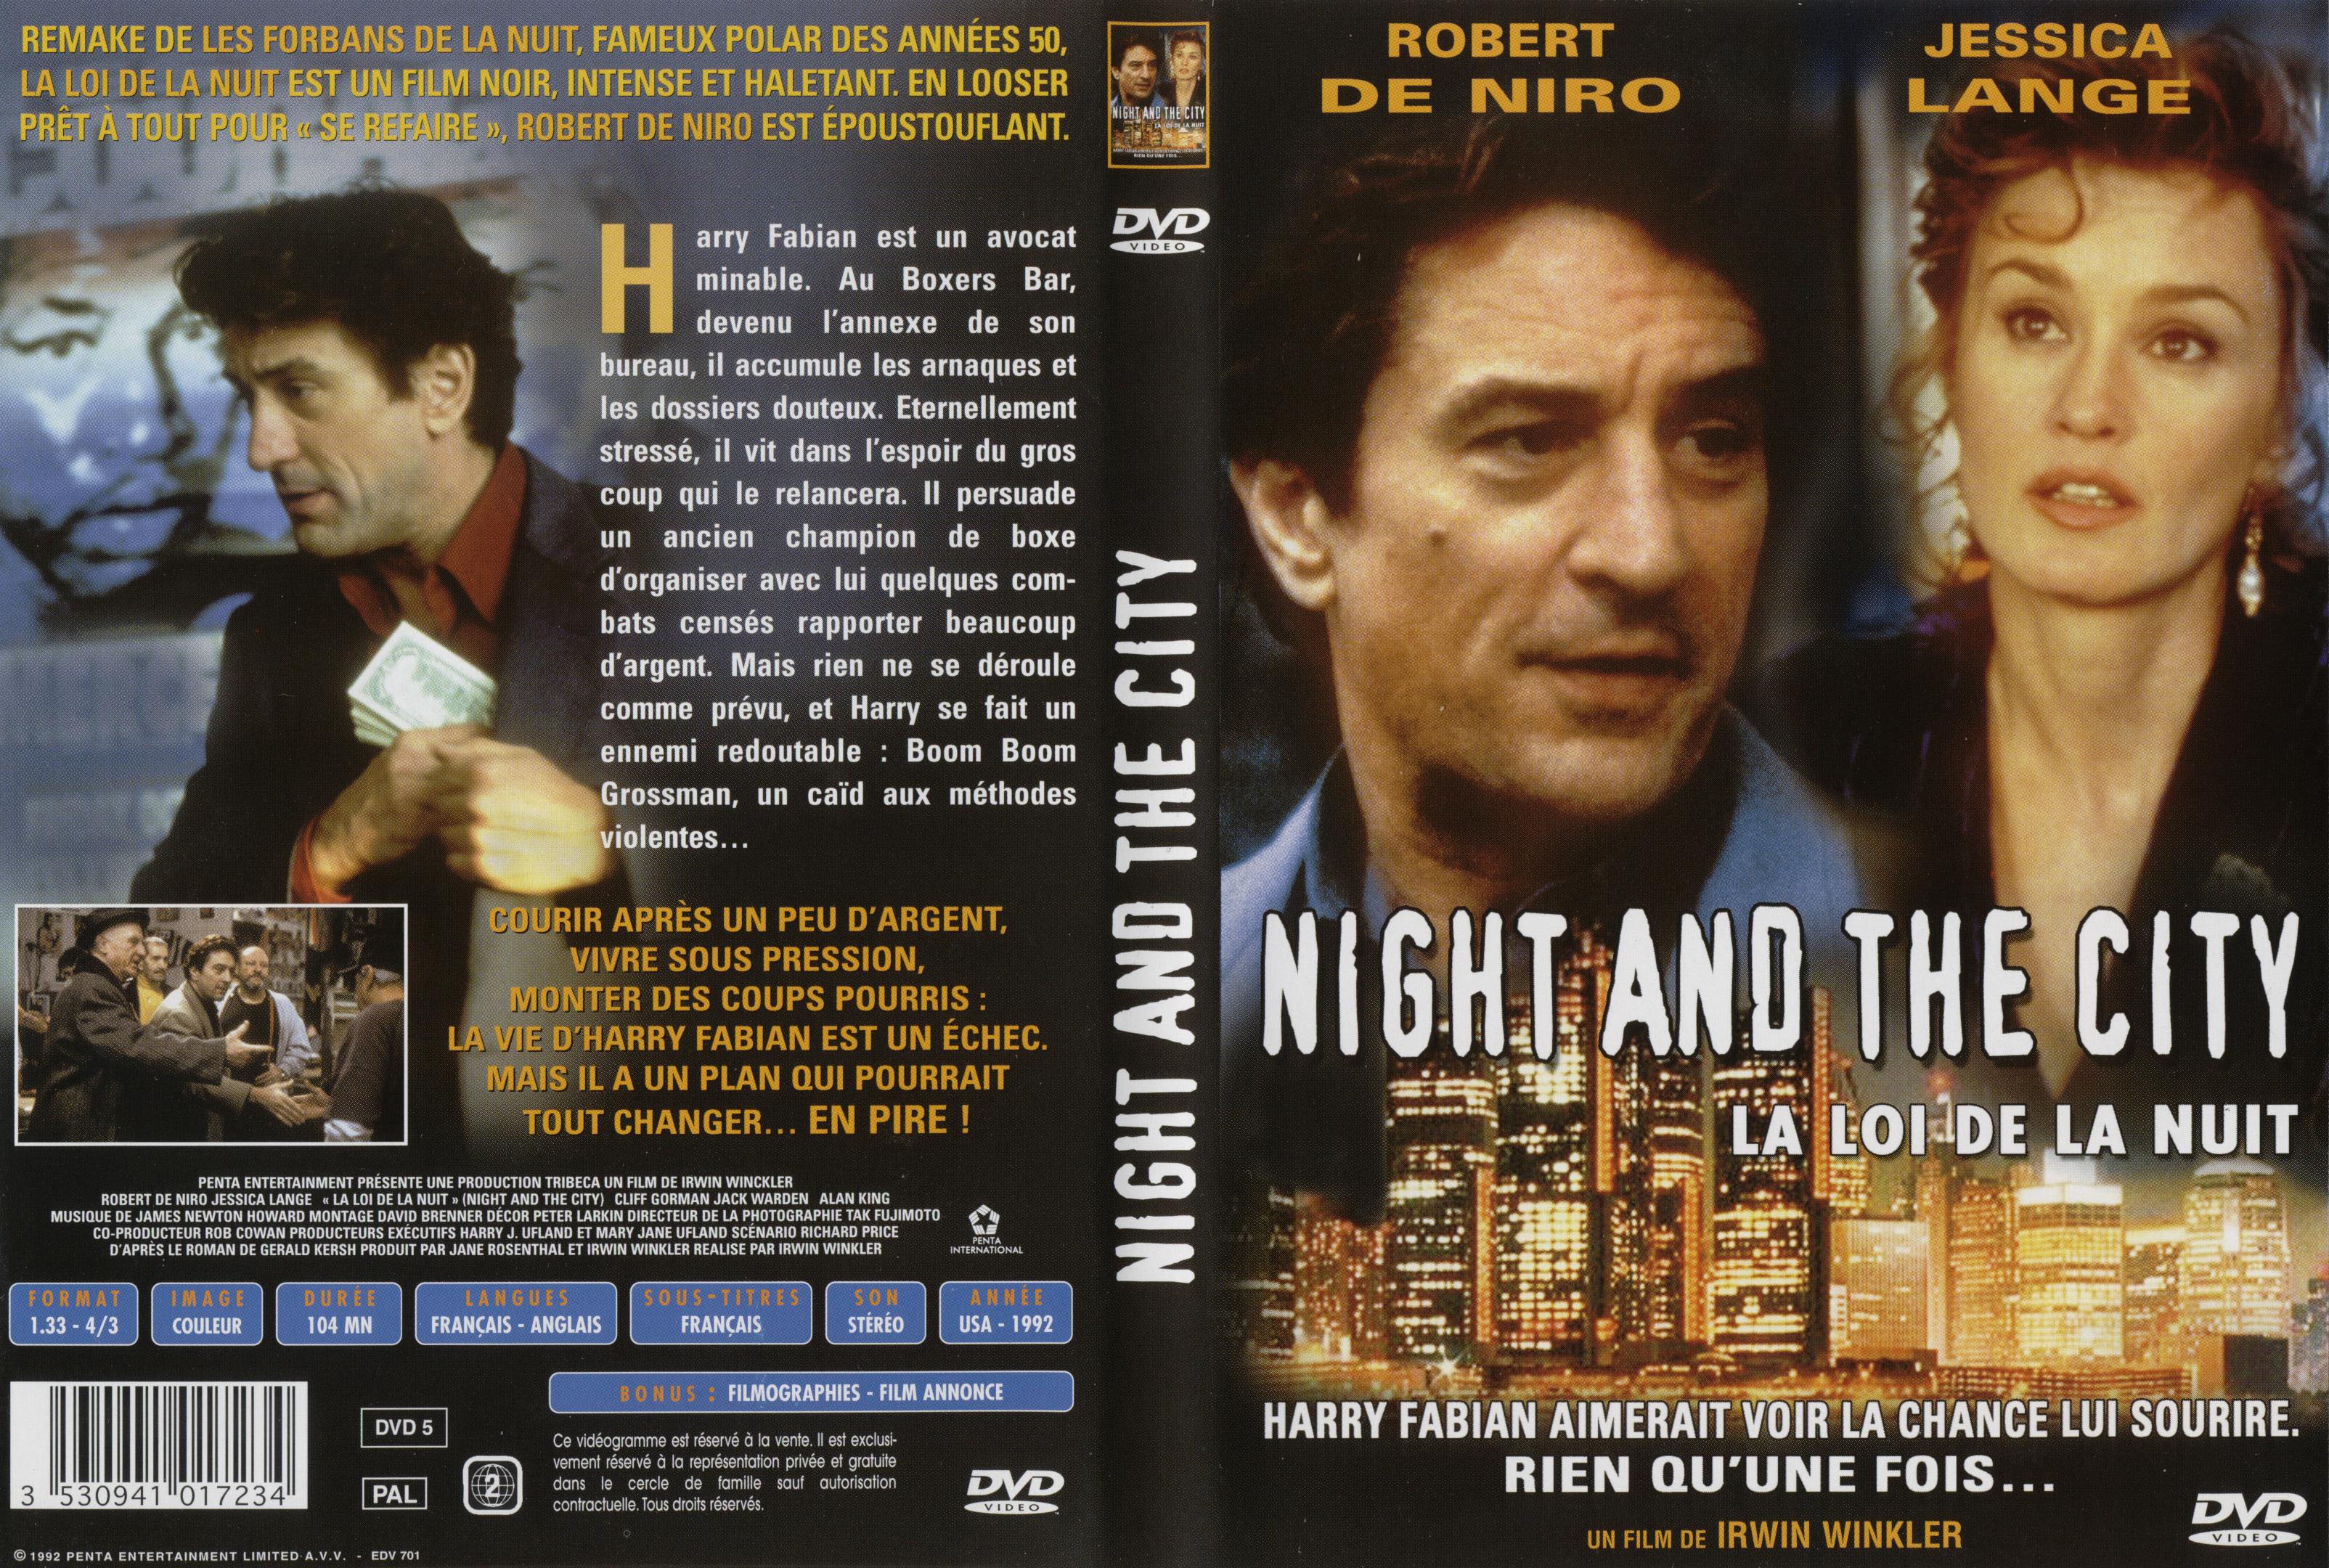 Jaquette DVD La loi de la nuit